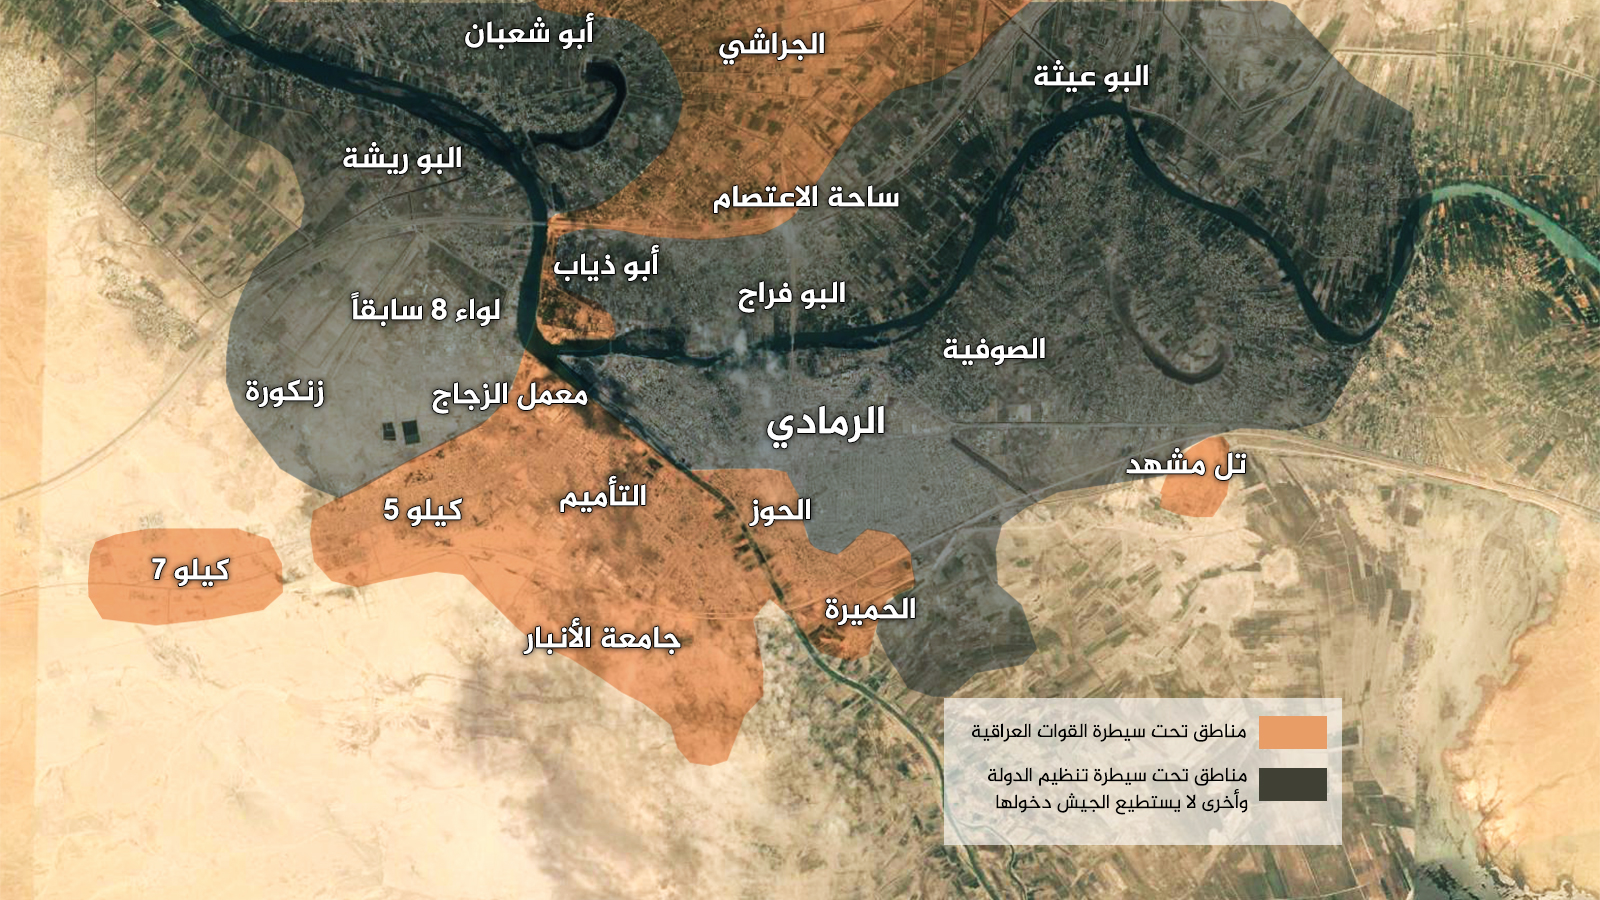 ‪خارطة الرمادي توضح مناطق سيطرة القوات العراقية ومناطق سيطرة تنظيم الدولة‬ (الجزيرة)